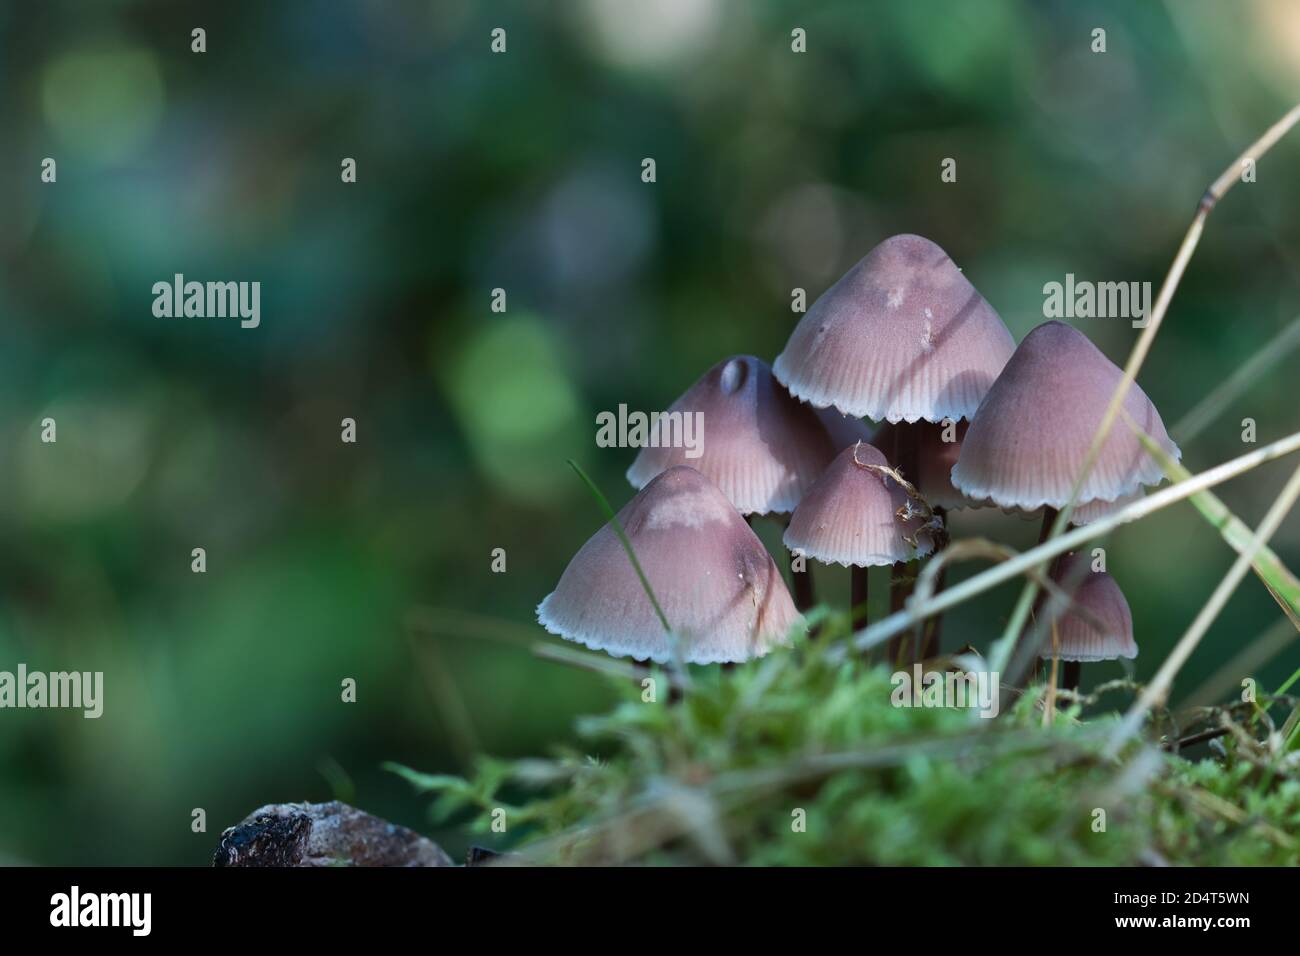 Chapeau de capot en chêne-souche champignons poussant dans le groupe, calottes rouge pâle et brun, mousse verte au premier plan, bokeh flou en arrière-plan de la saison d'automne Banque D'Images